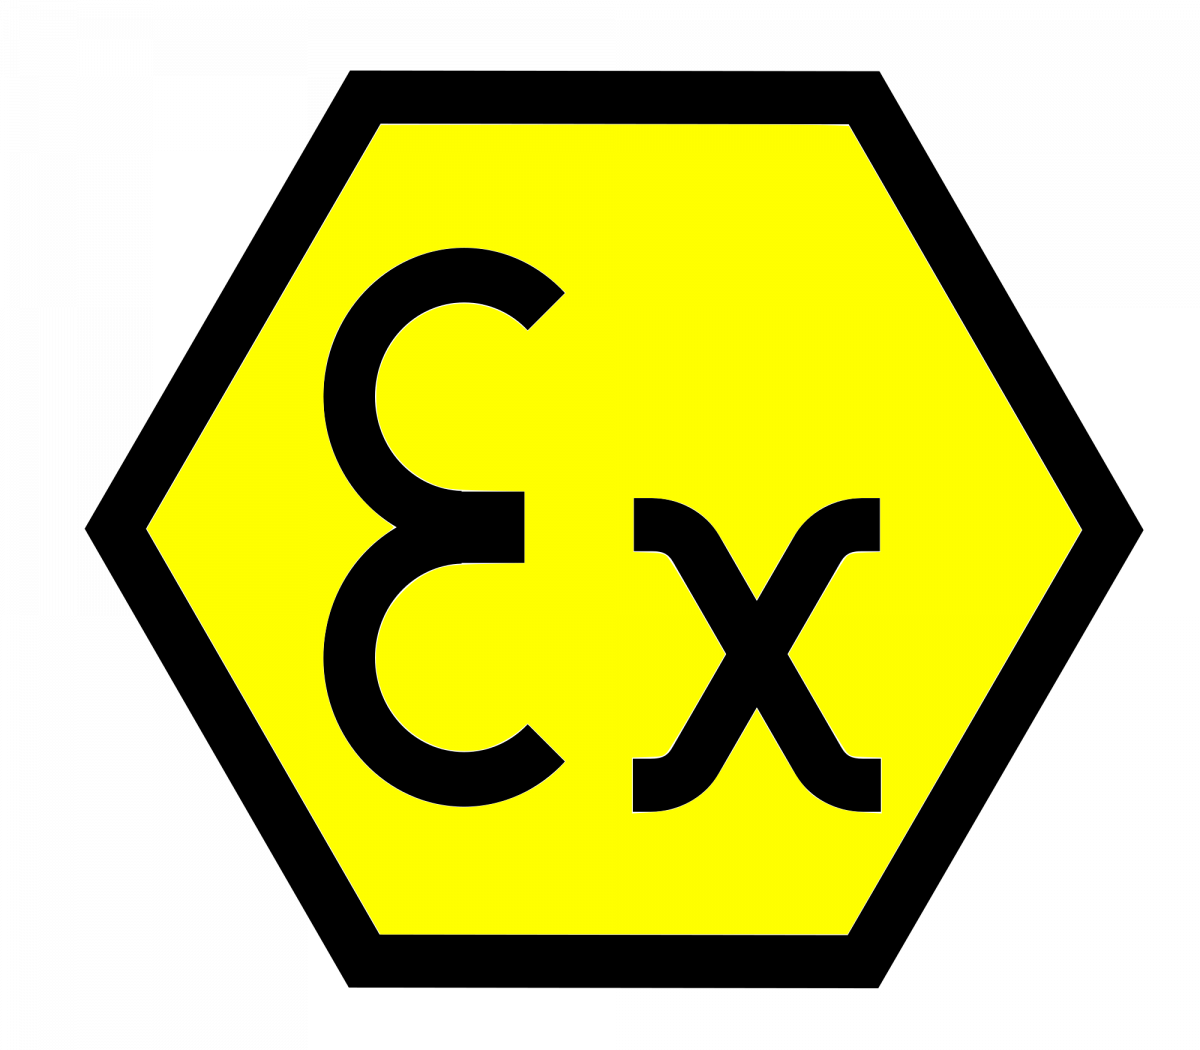 Ex-Symbol